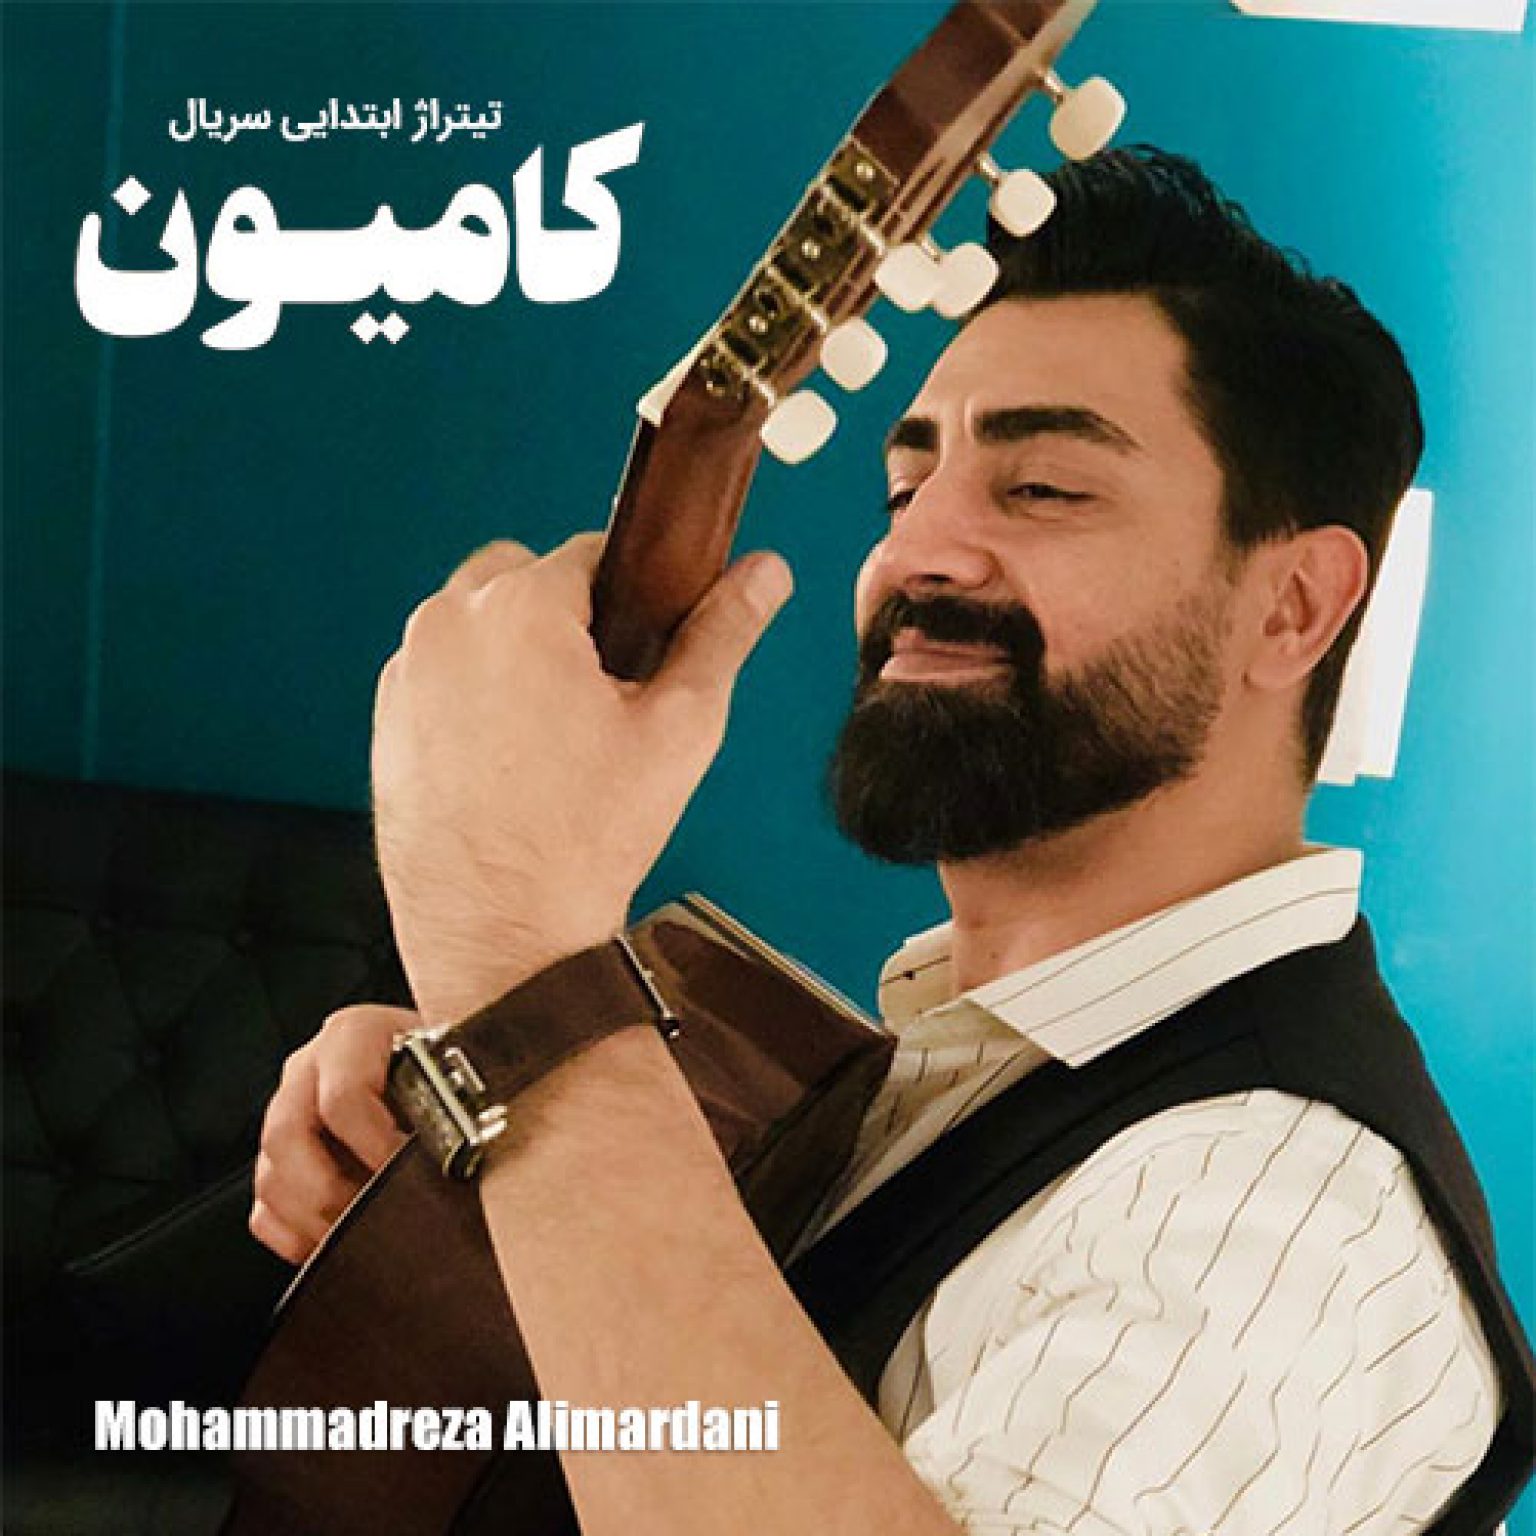 دانلود آهنگ تیتراژ ابتدایی سریال کامیون از محمدرضا علیمردانی